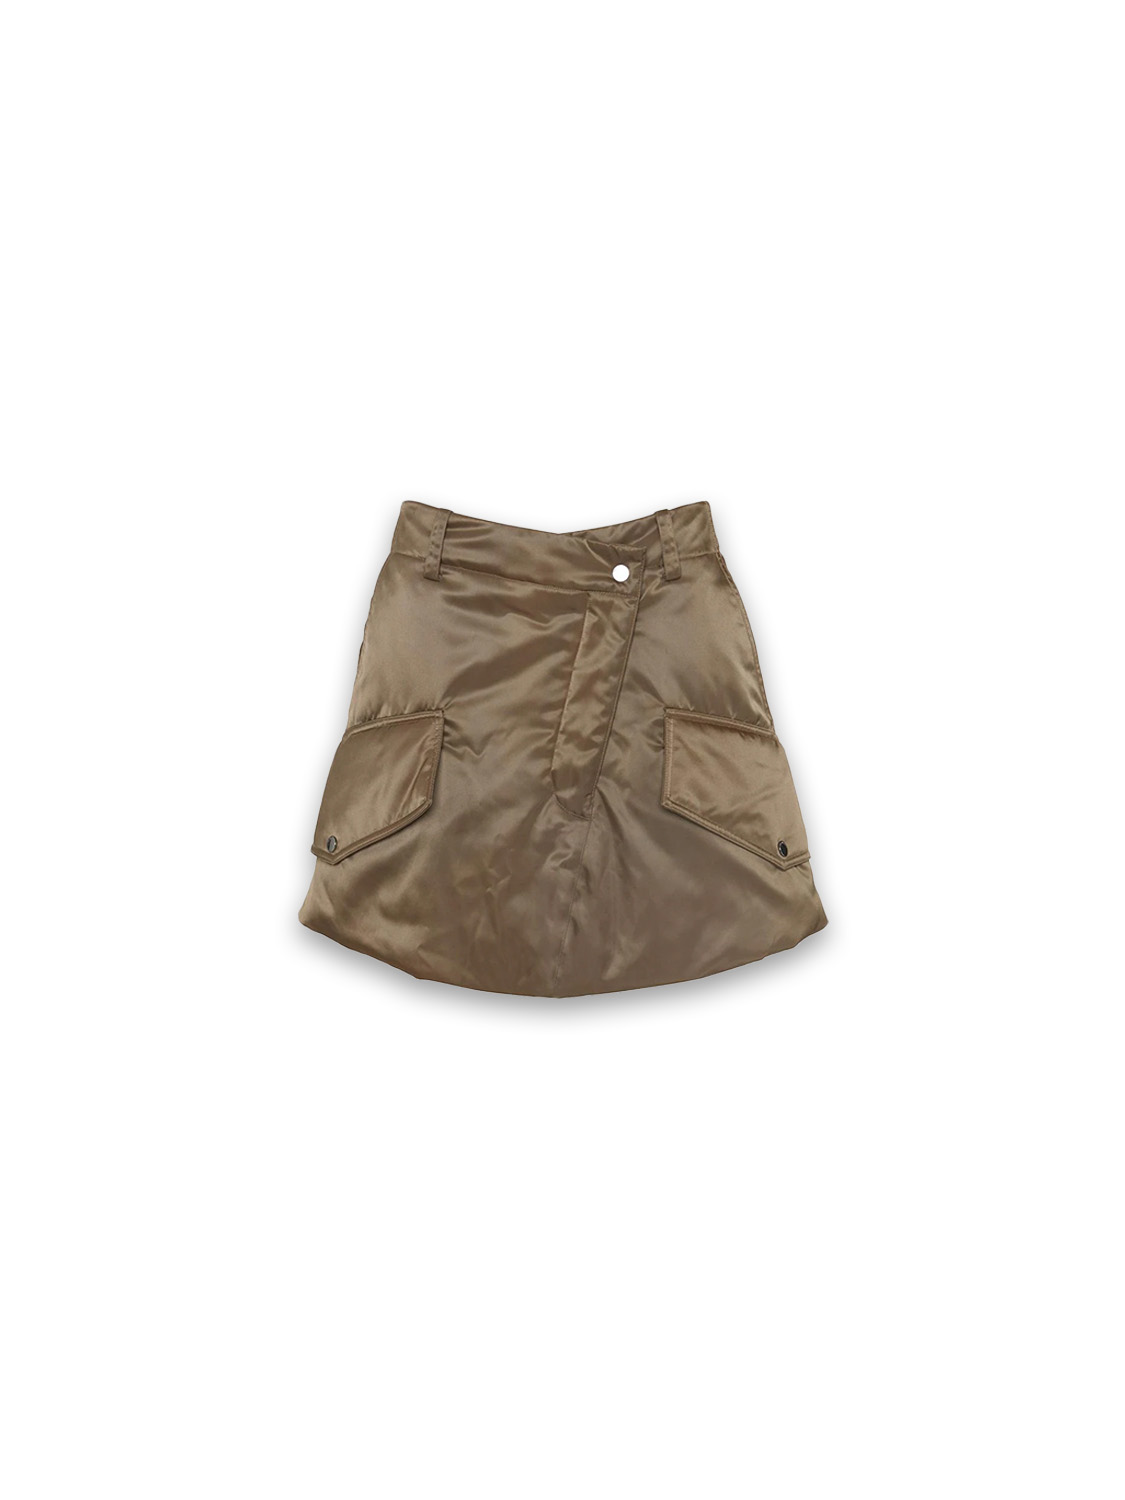 Padded - Padded mini skirt in cargo style